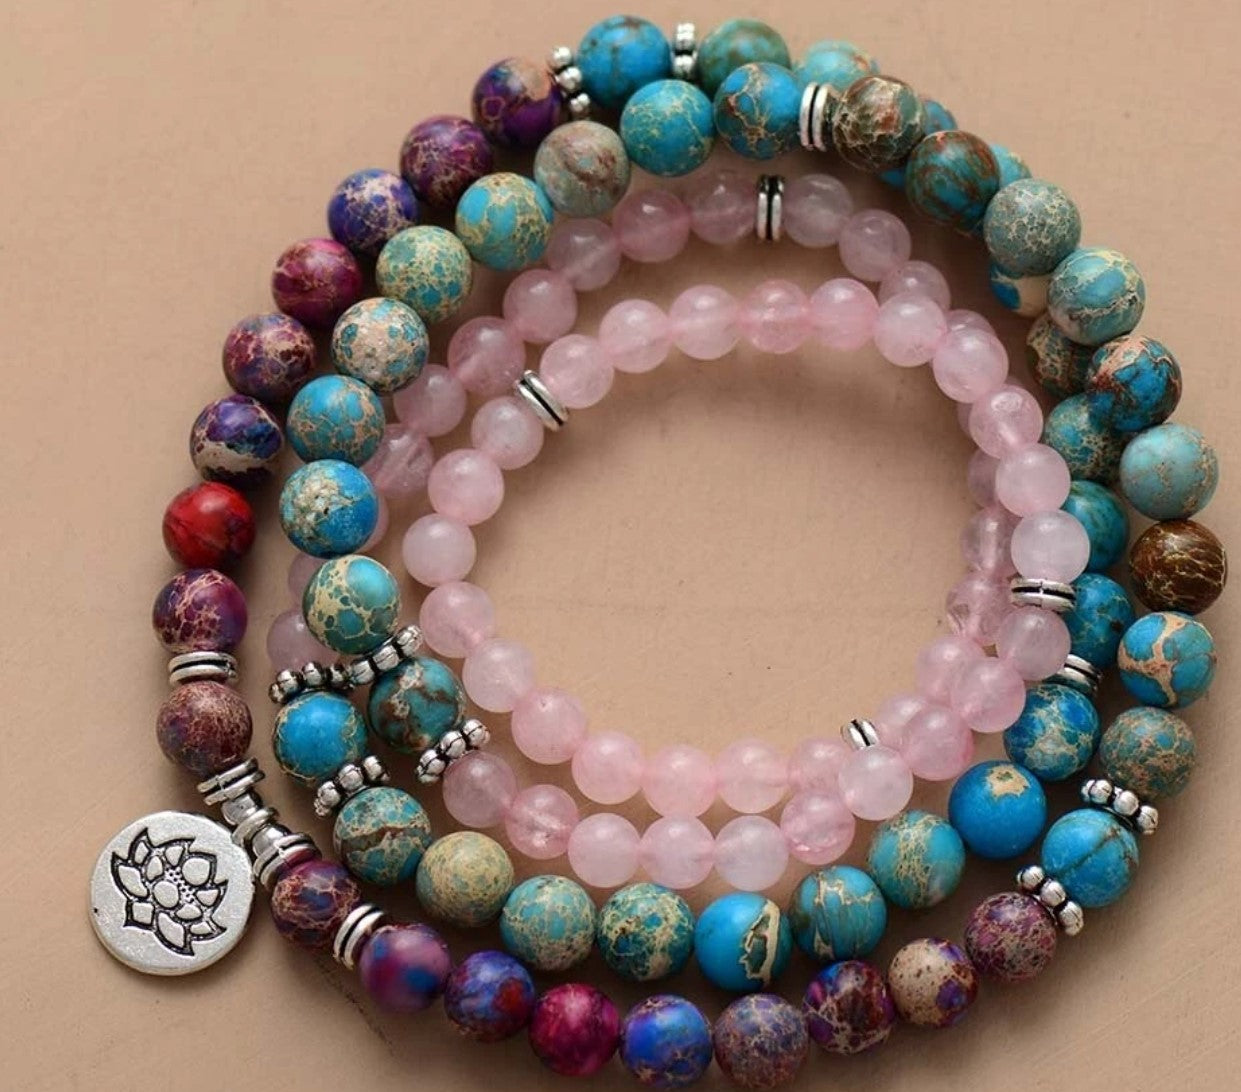 Amazon Stone Tiger Eye Stone Bracelet Necklace 108 Buddha Beads Lotus Bracelet